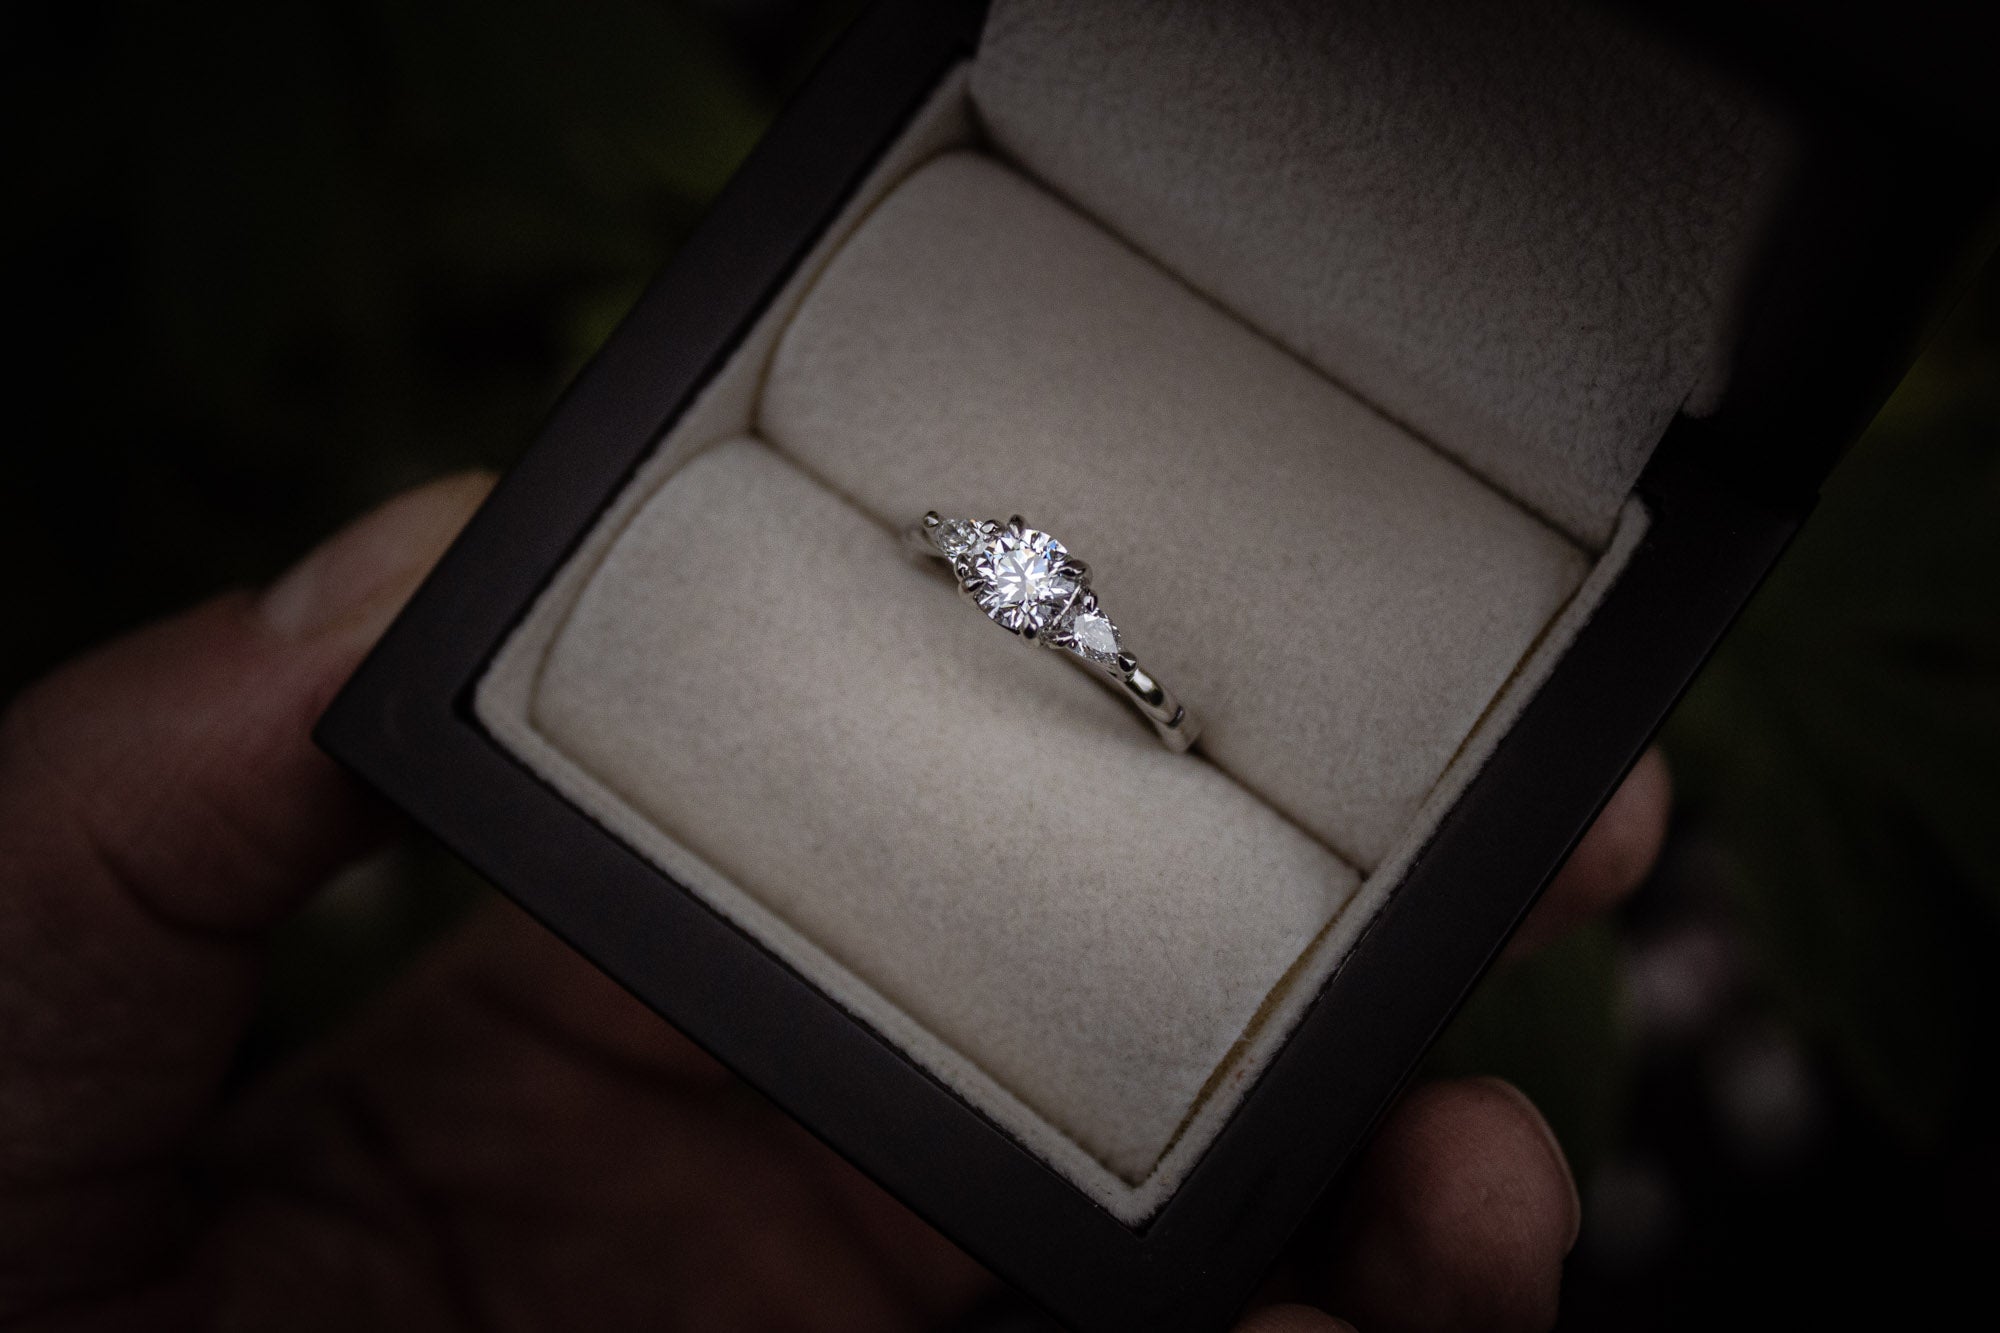 Bespoke twisted celtic diamond engagement ring